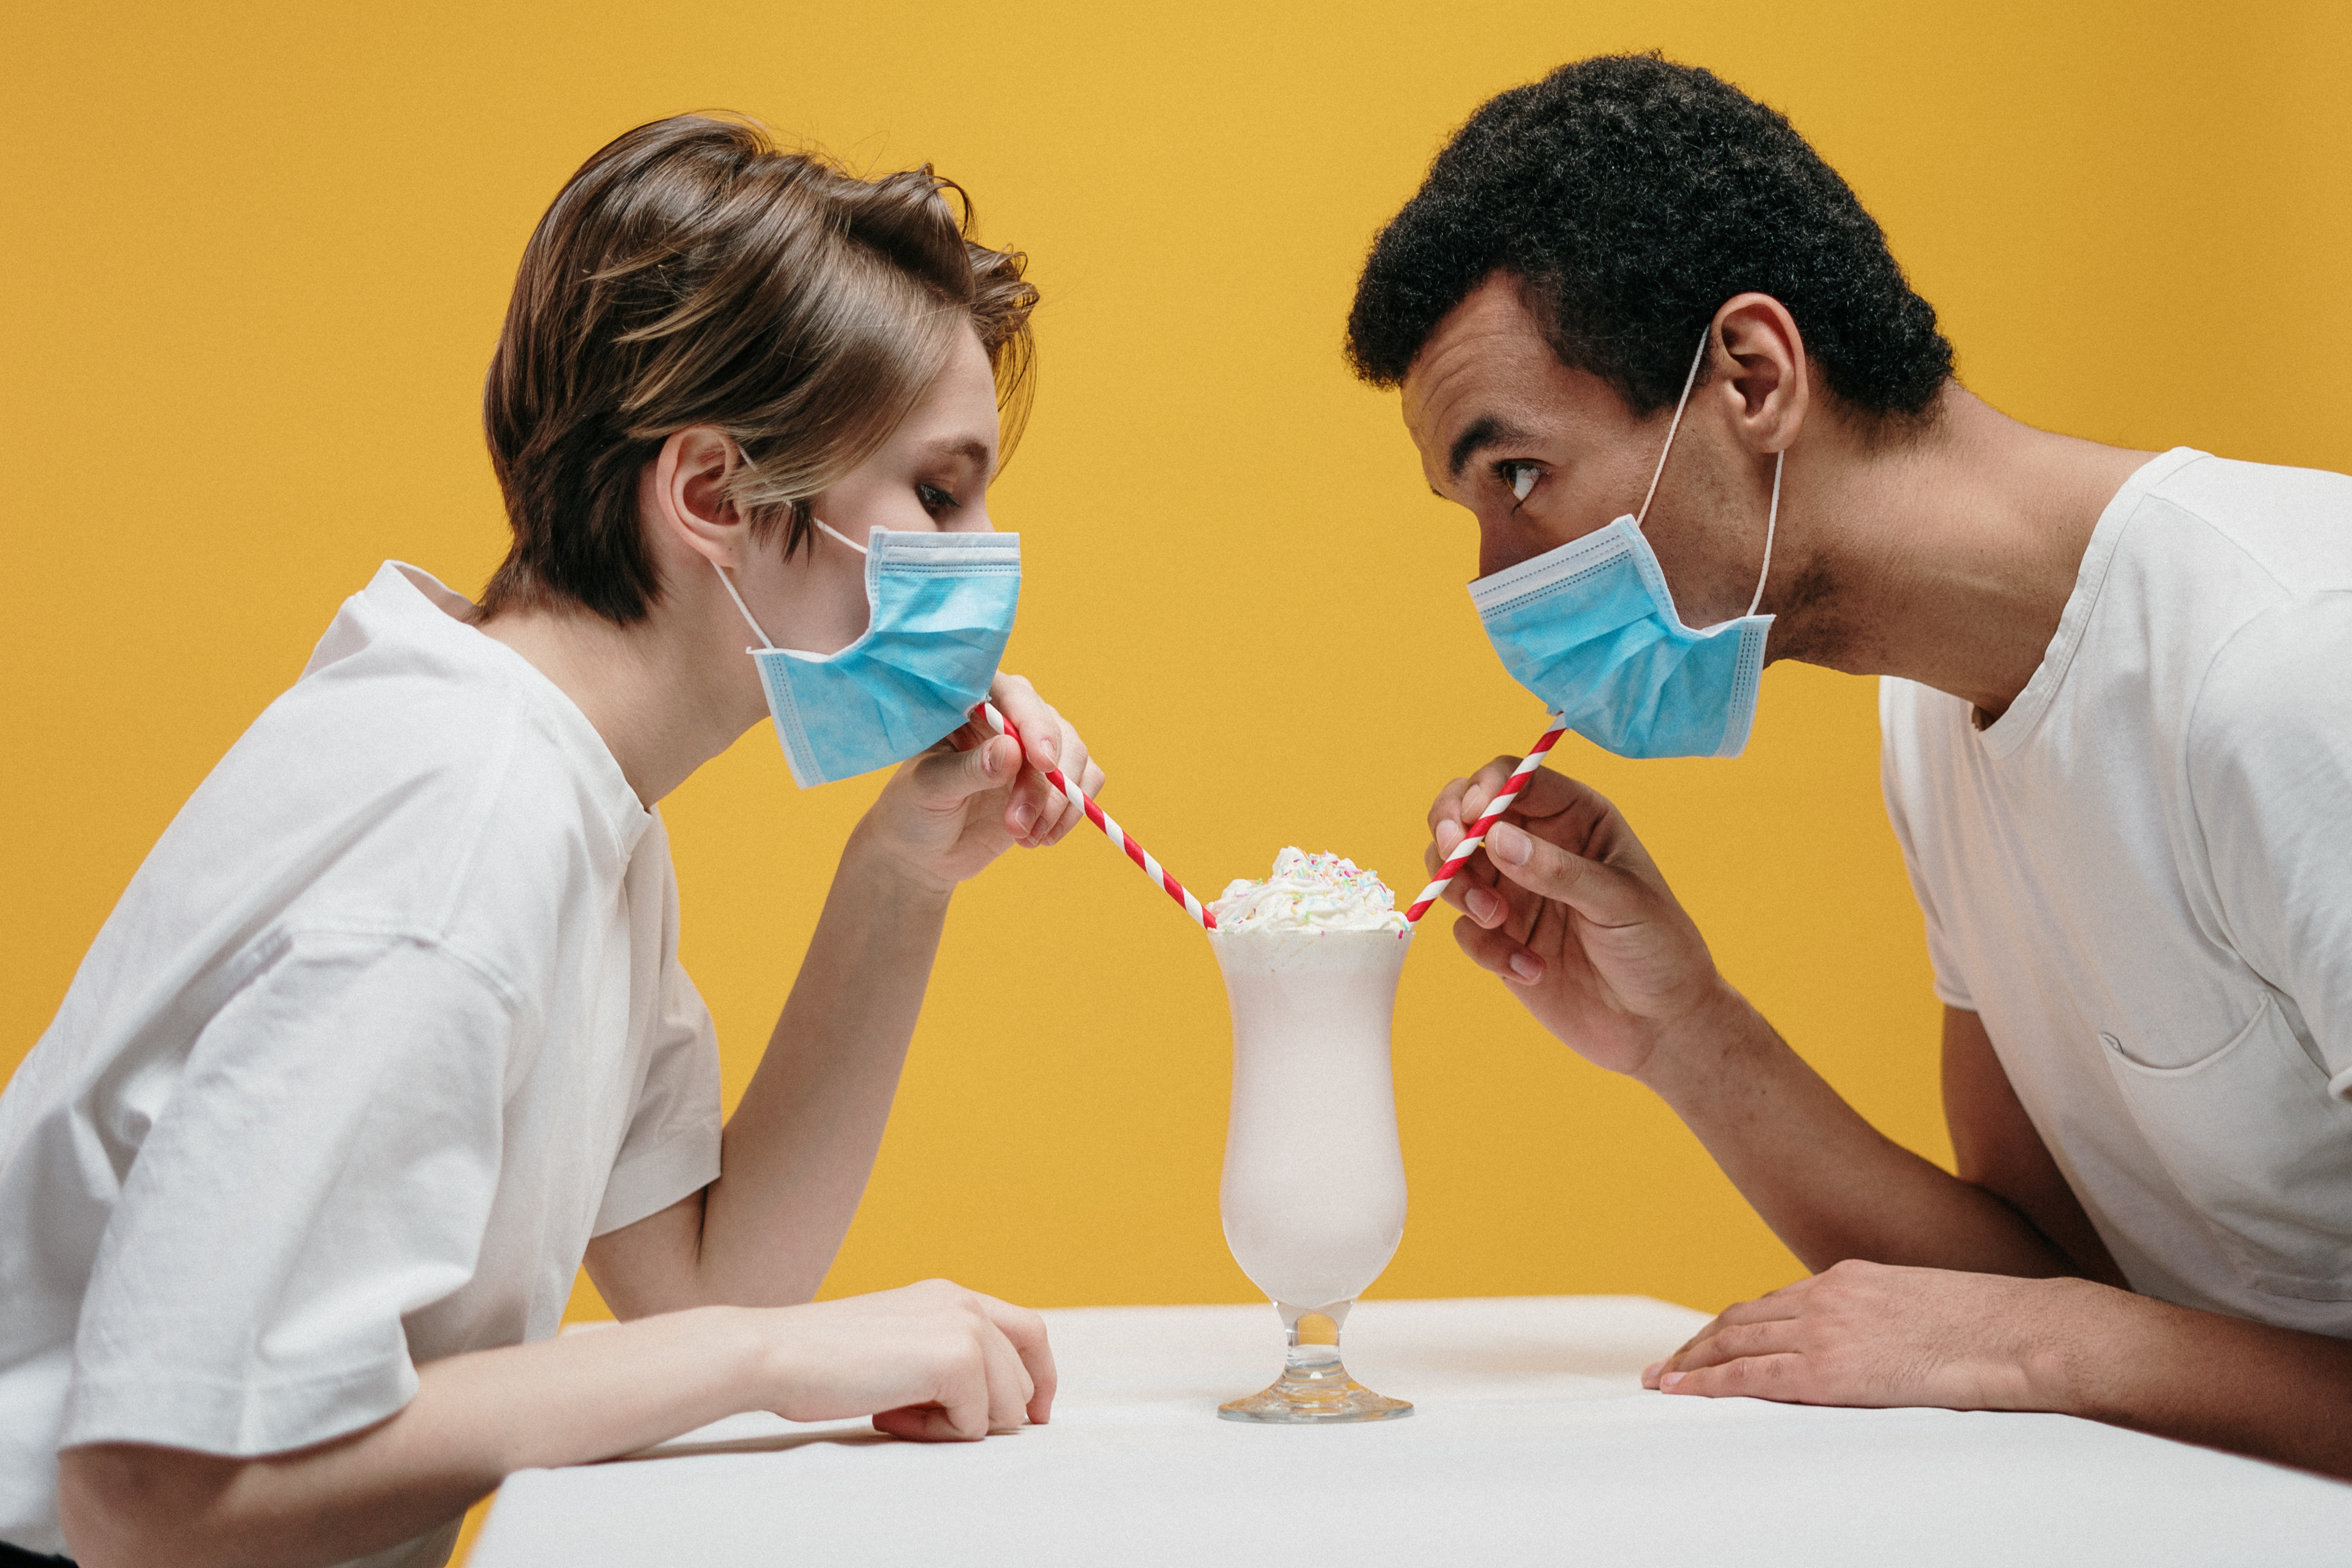 Eine Frau und ein Mann sitzen sich an einem Tisch vor einem gelben Hintergrund gegenüber. Sie tragen einen Mund-Nasen-Schutz und trinken gemeinsam mit Strohhalmen einen Milchshake.